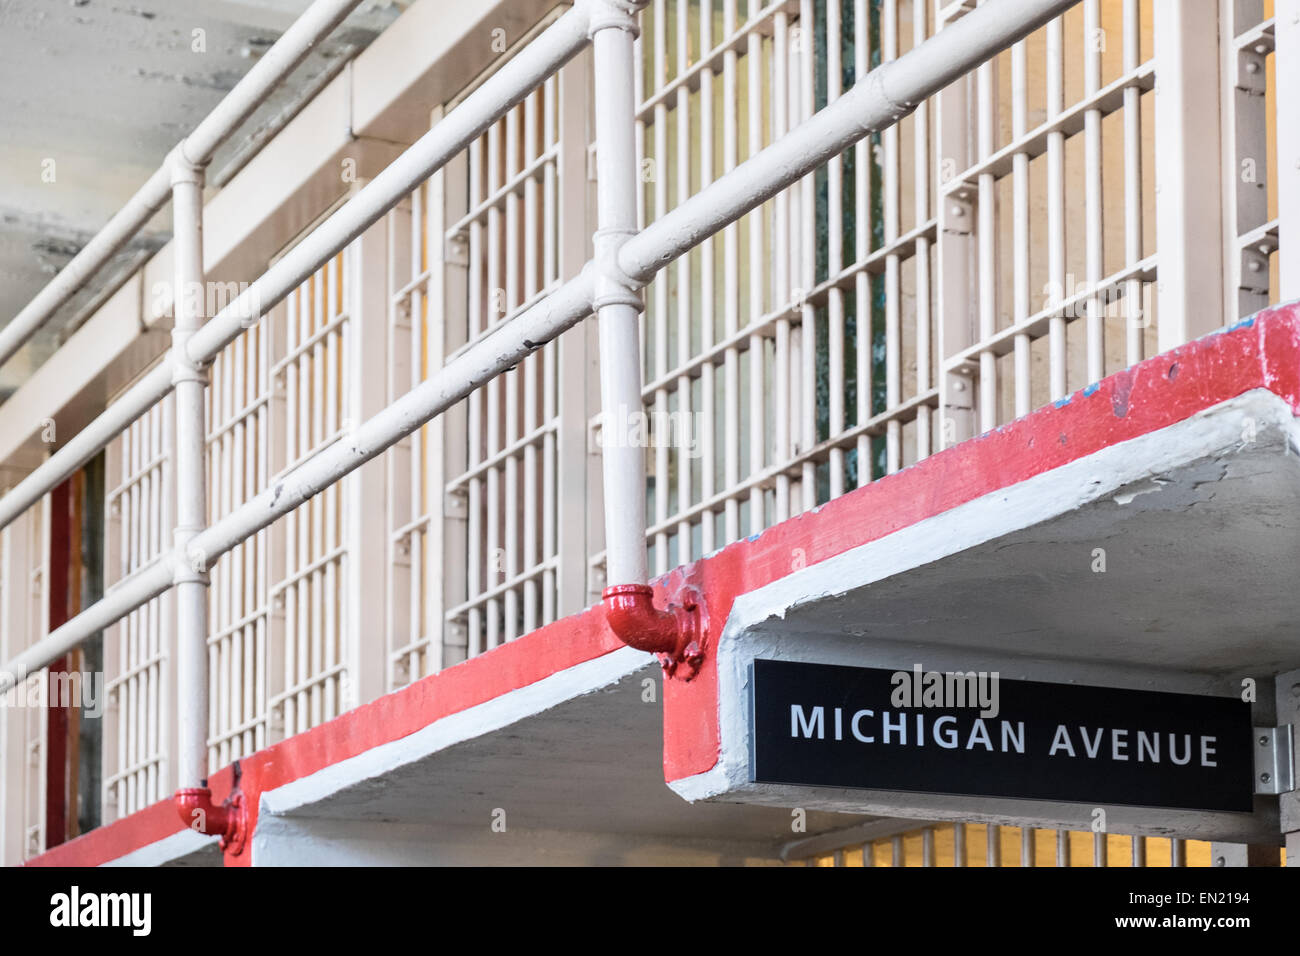 Michigan avenue Alcatraz penitentiary prison cells Stock Photo